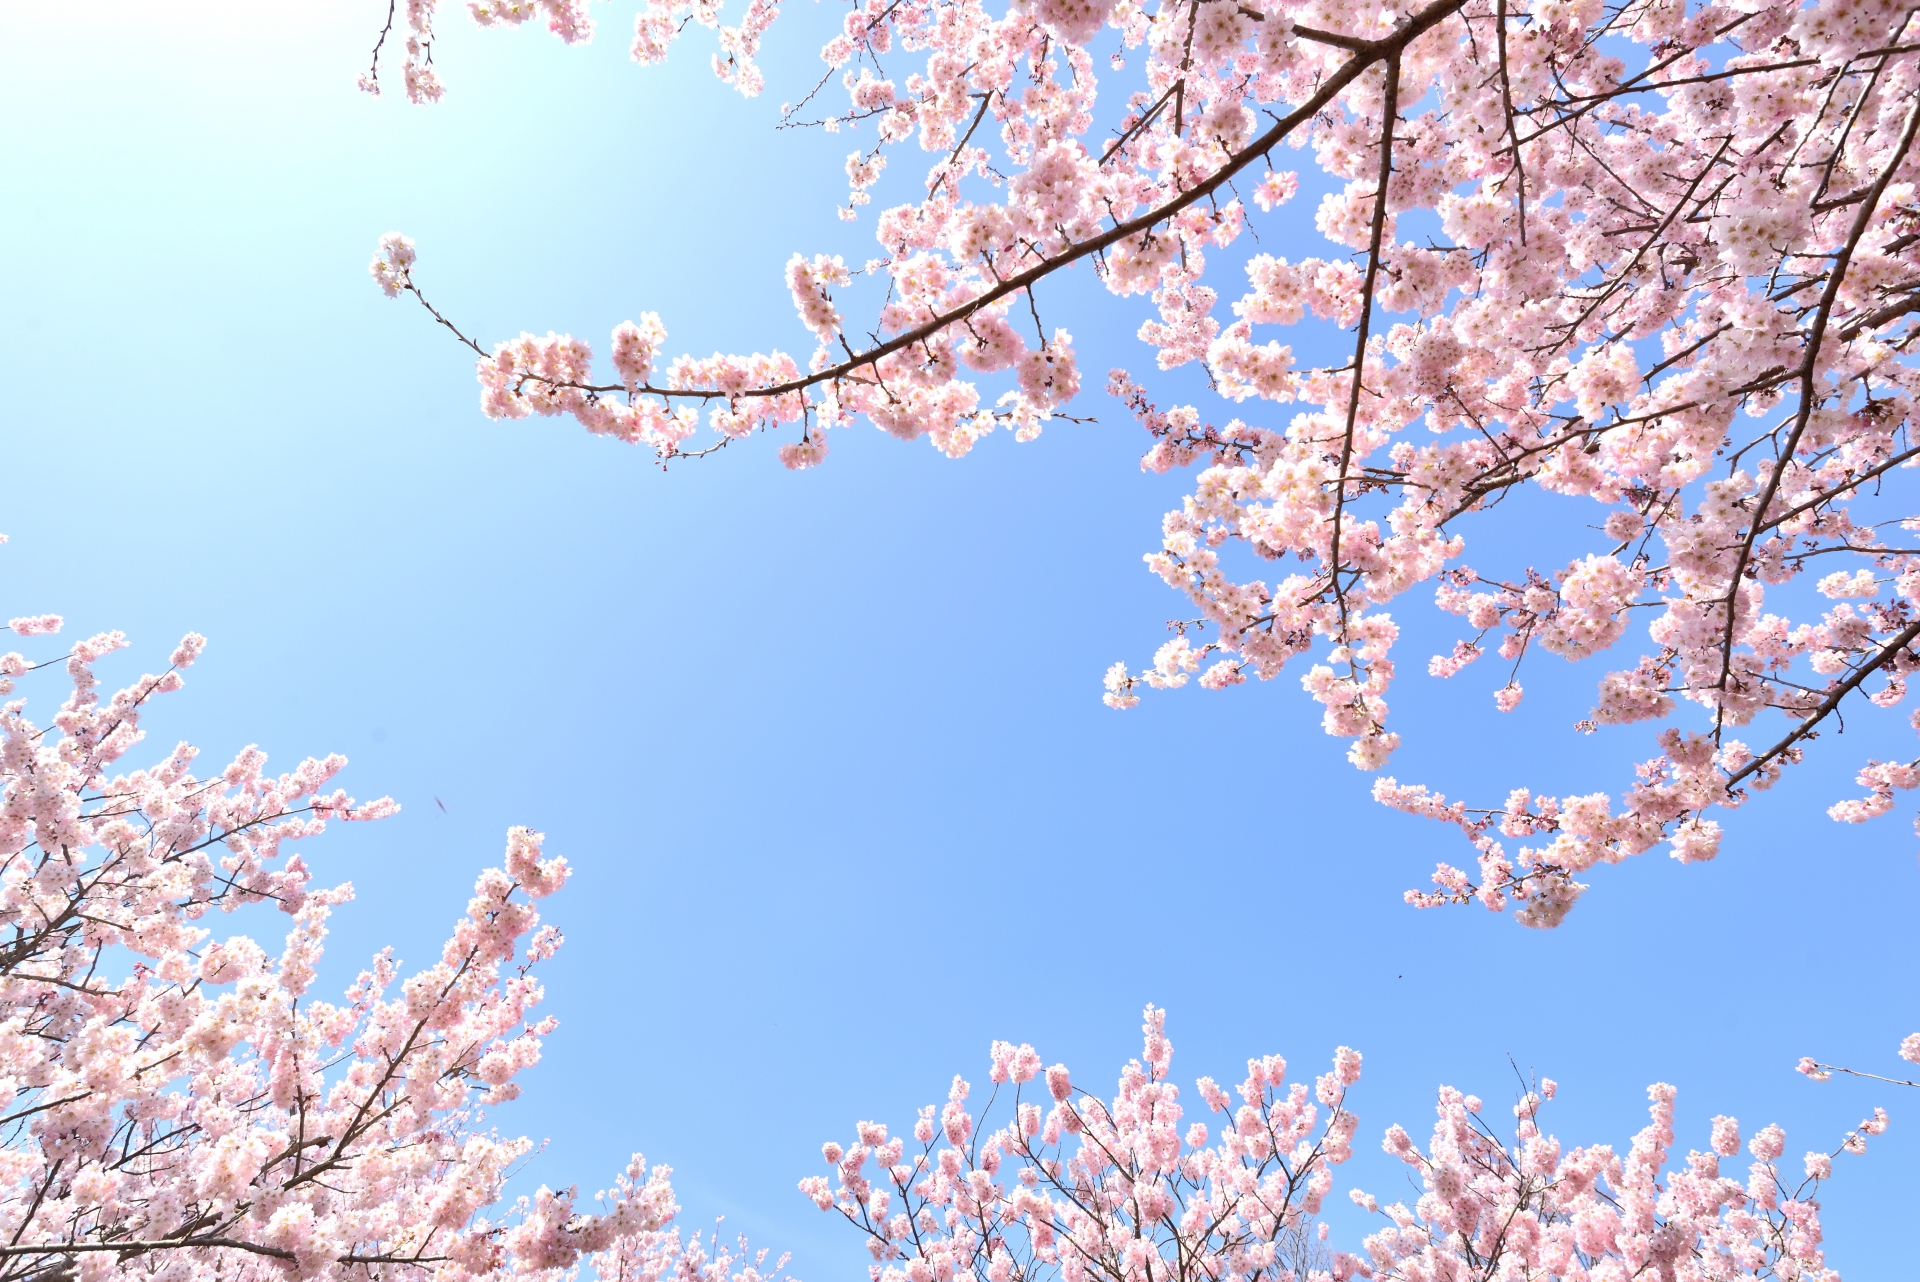 年 井の頭恩賜公園 桜の開花 見頃 ライトアップ情報 情報発信ブログサイト Blue Rose